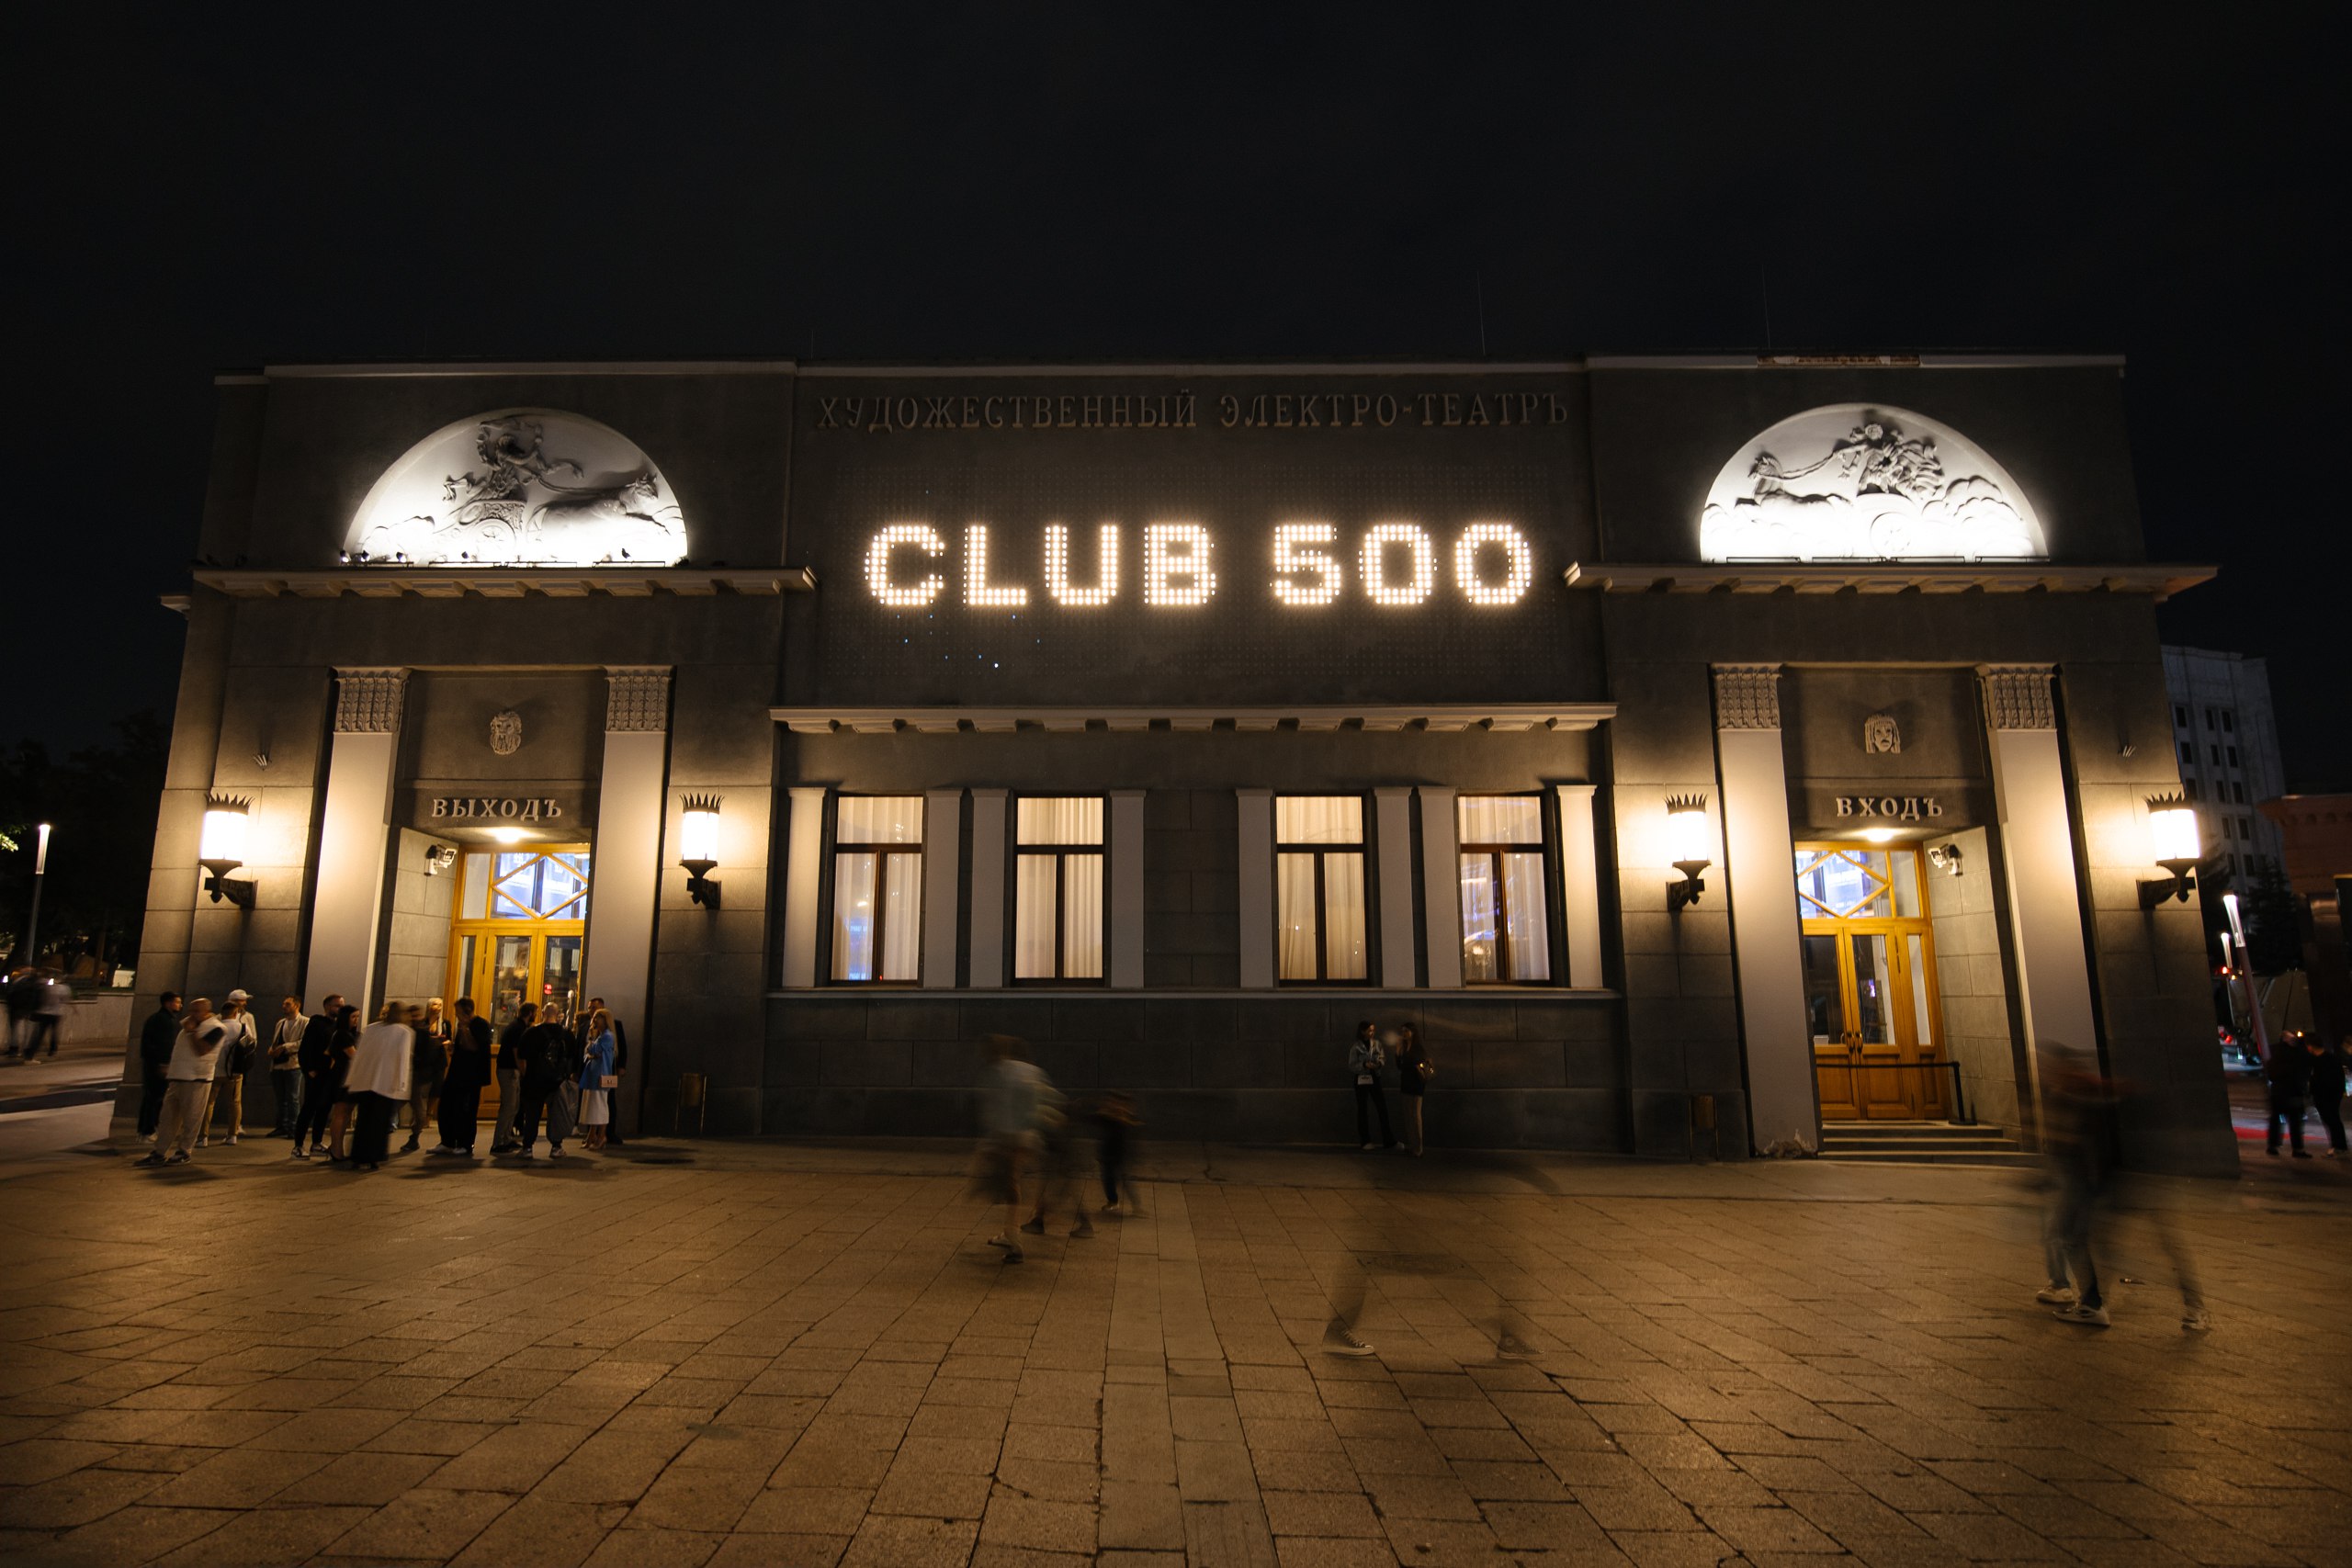 фото: Становление крупнейшего бизнес-клуба страны Club 500 показали на большом экране